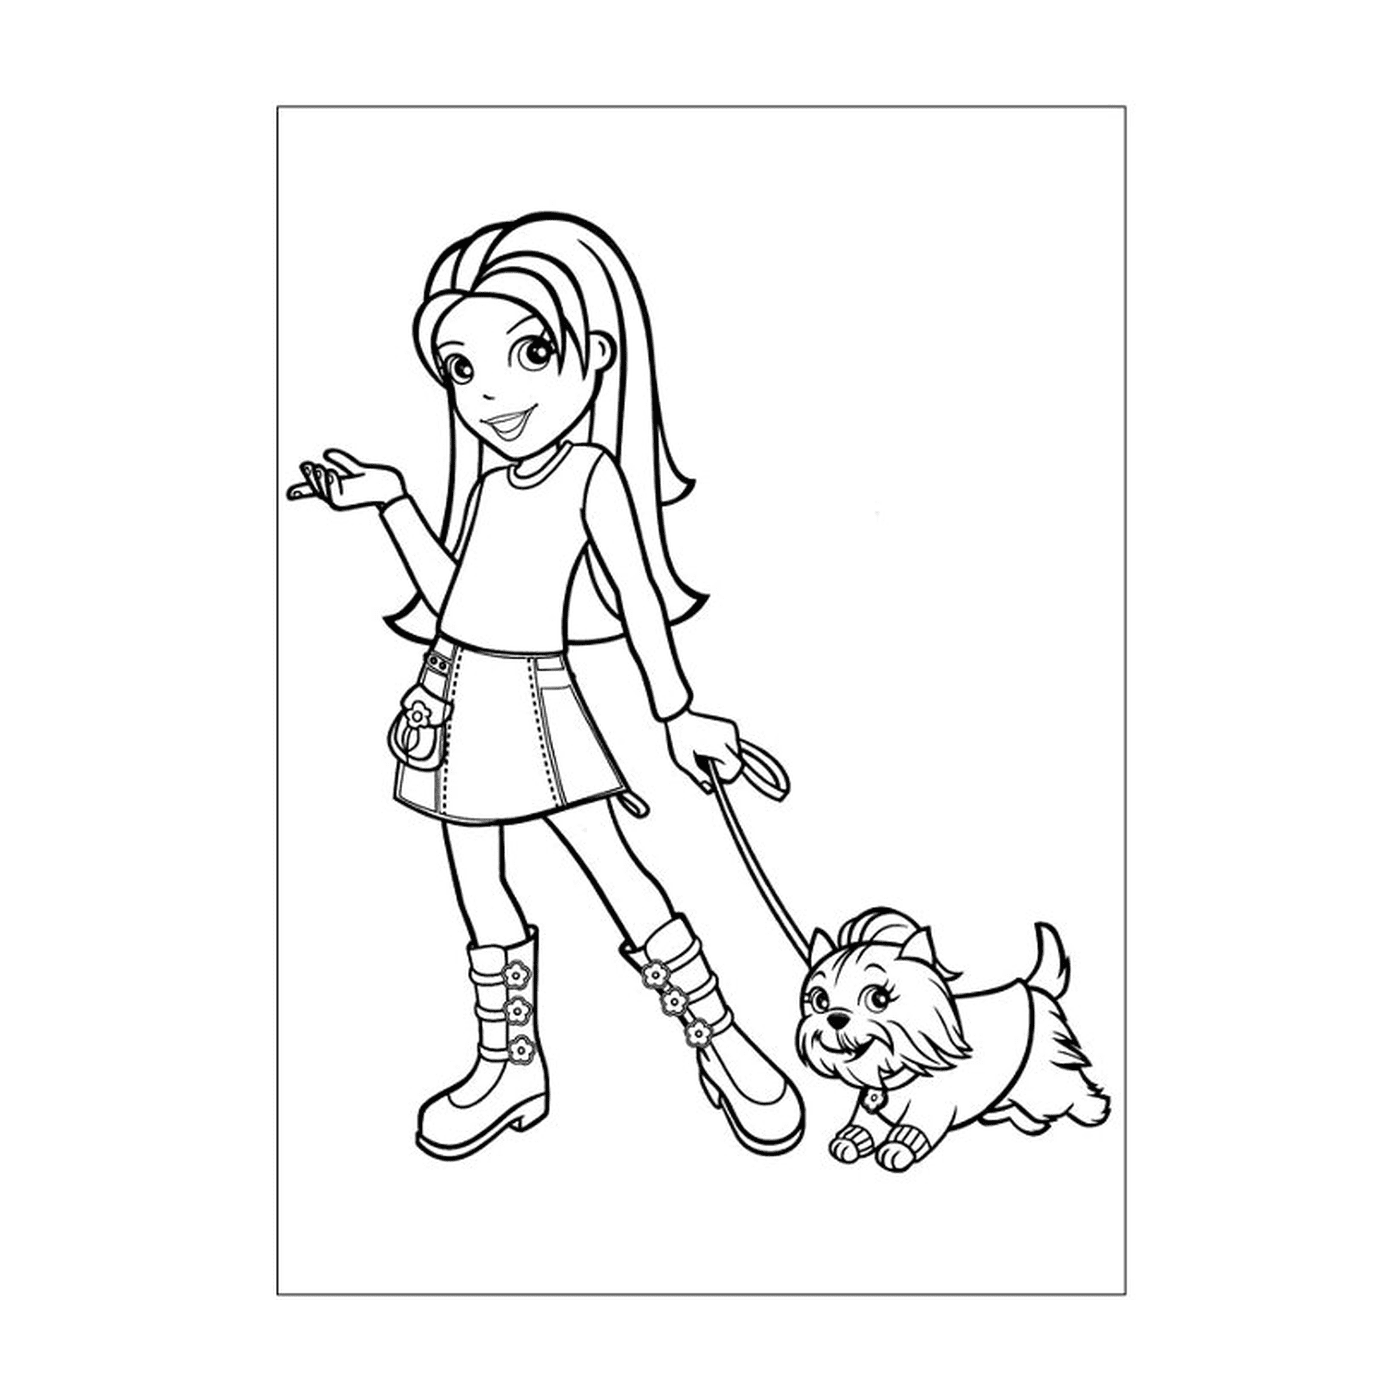  A girl walking a dog on a leash 